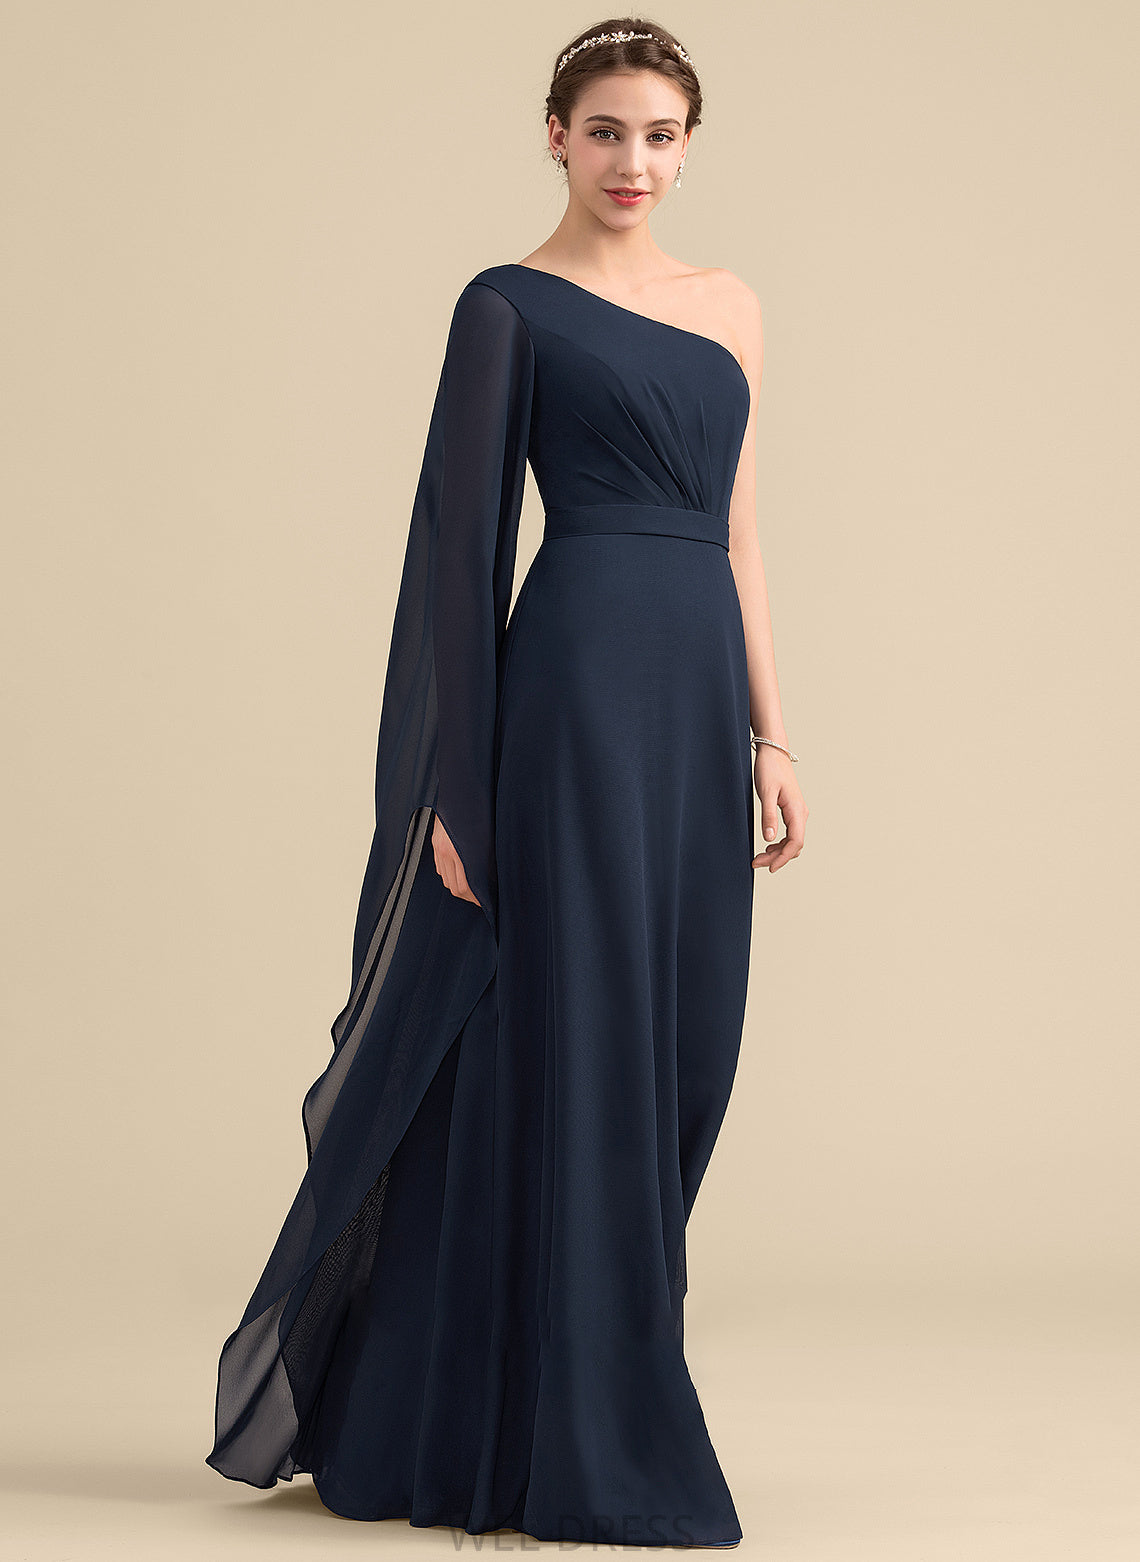 One-Shoulder Floor-Length Neckline Ruffle Fabric Length A-Line Silhouette Embellishment Arianna A-Line/Princess Sleeveless